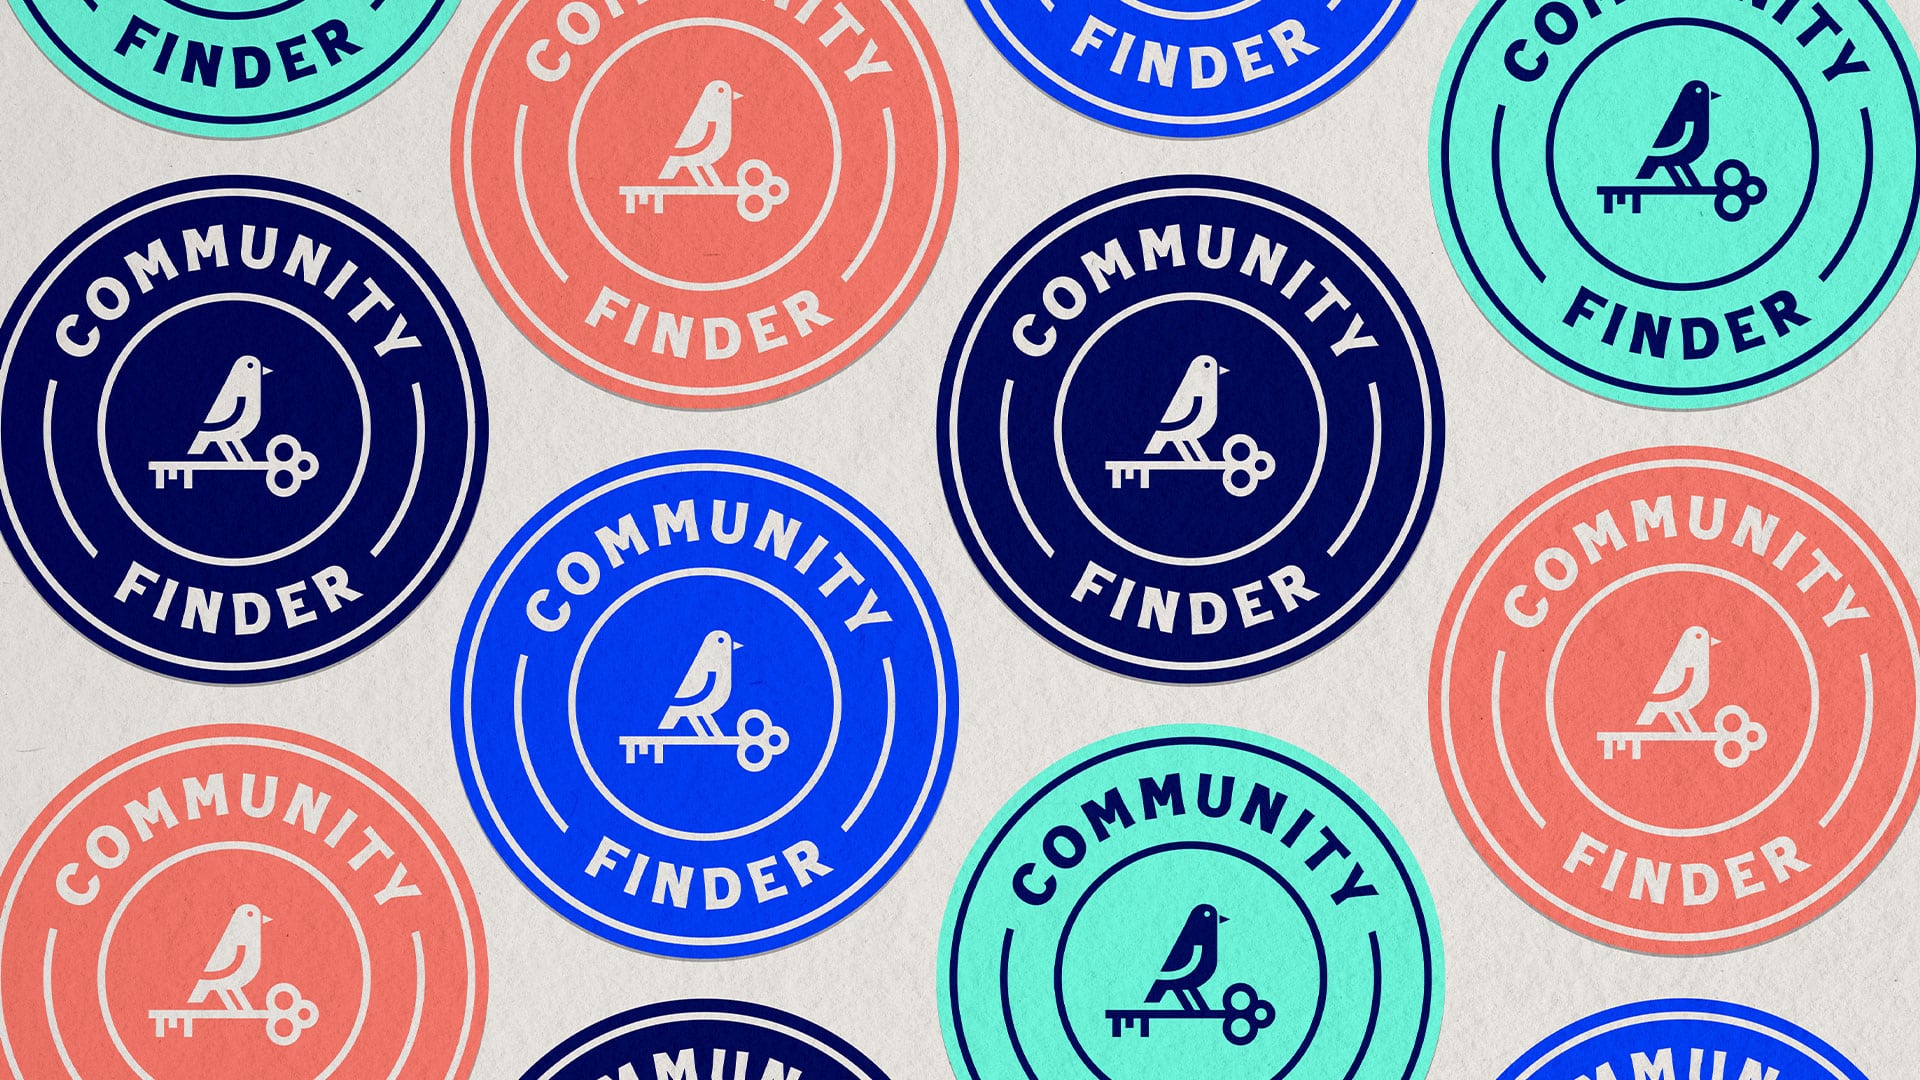 Community Finder Stickers